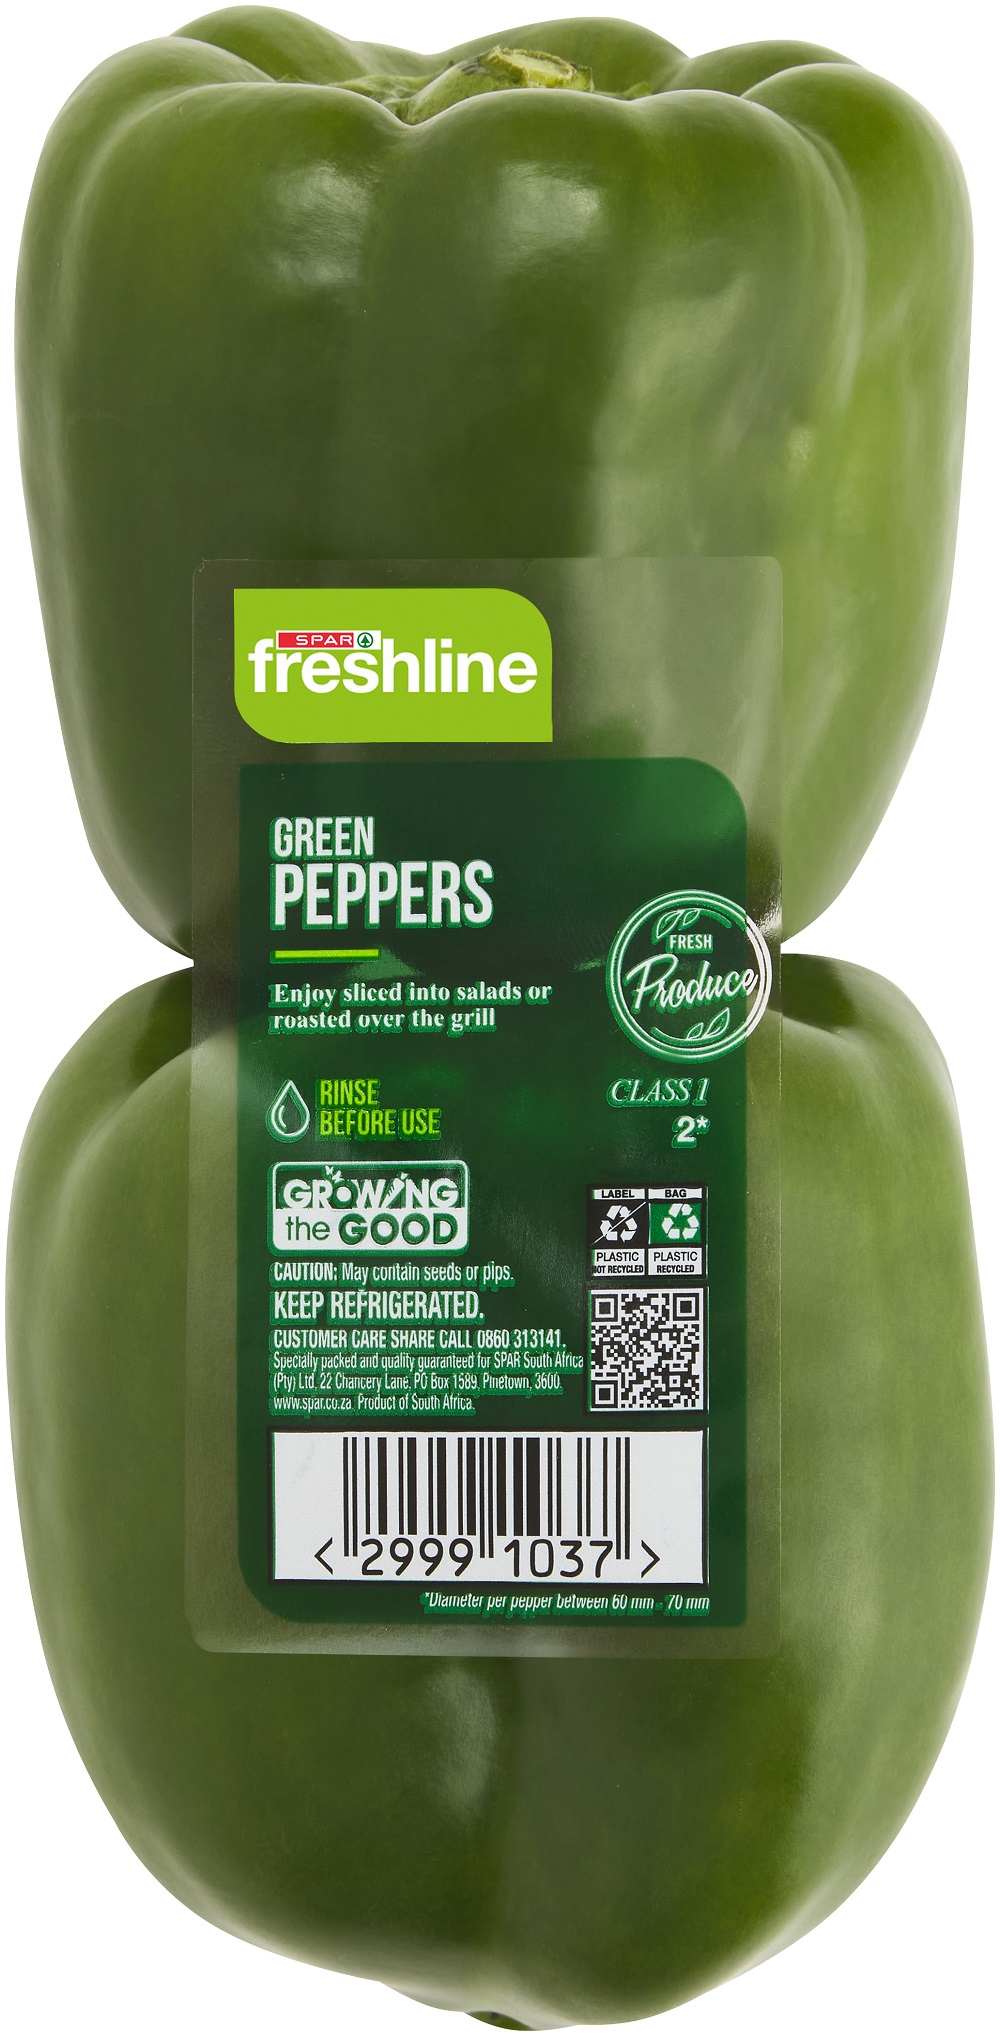 freshline green peppers